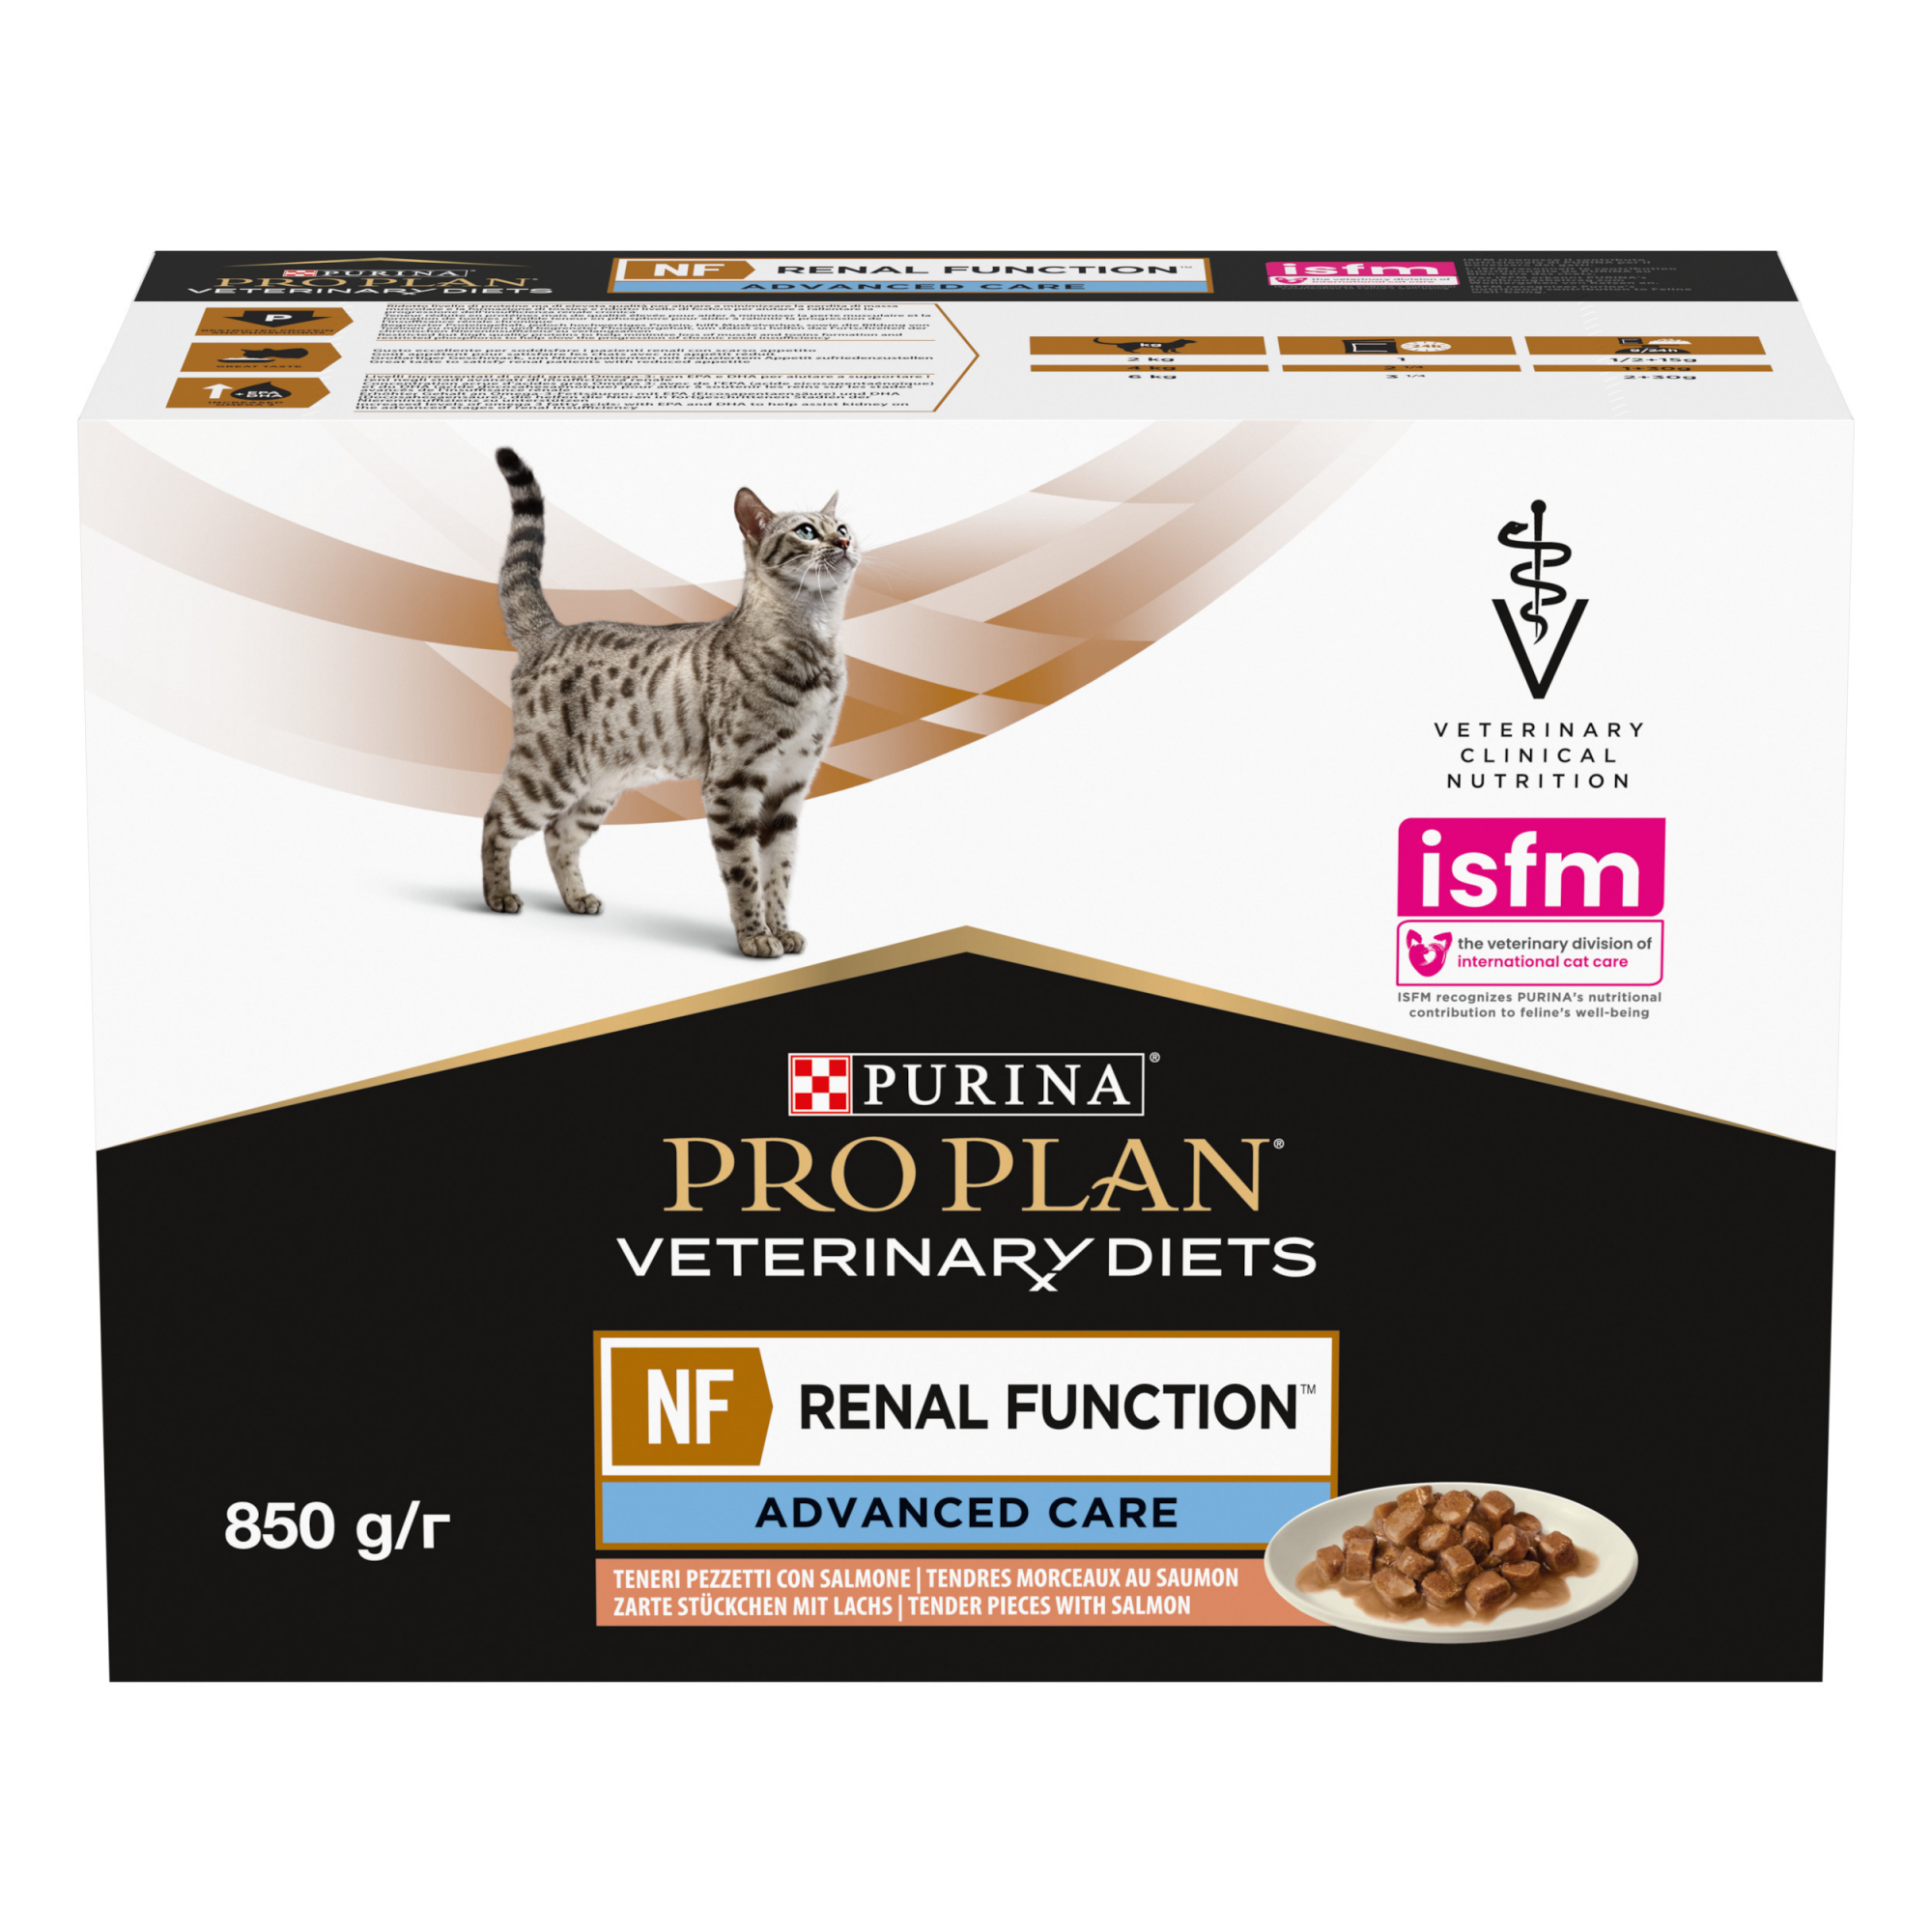 Alimentação para gato com problemas urinários e renais Pâté Purina Pro Plan Veterinary Diets NF ST/OX Renal Function